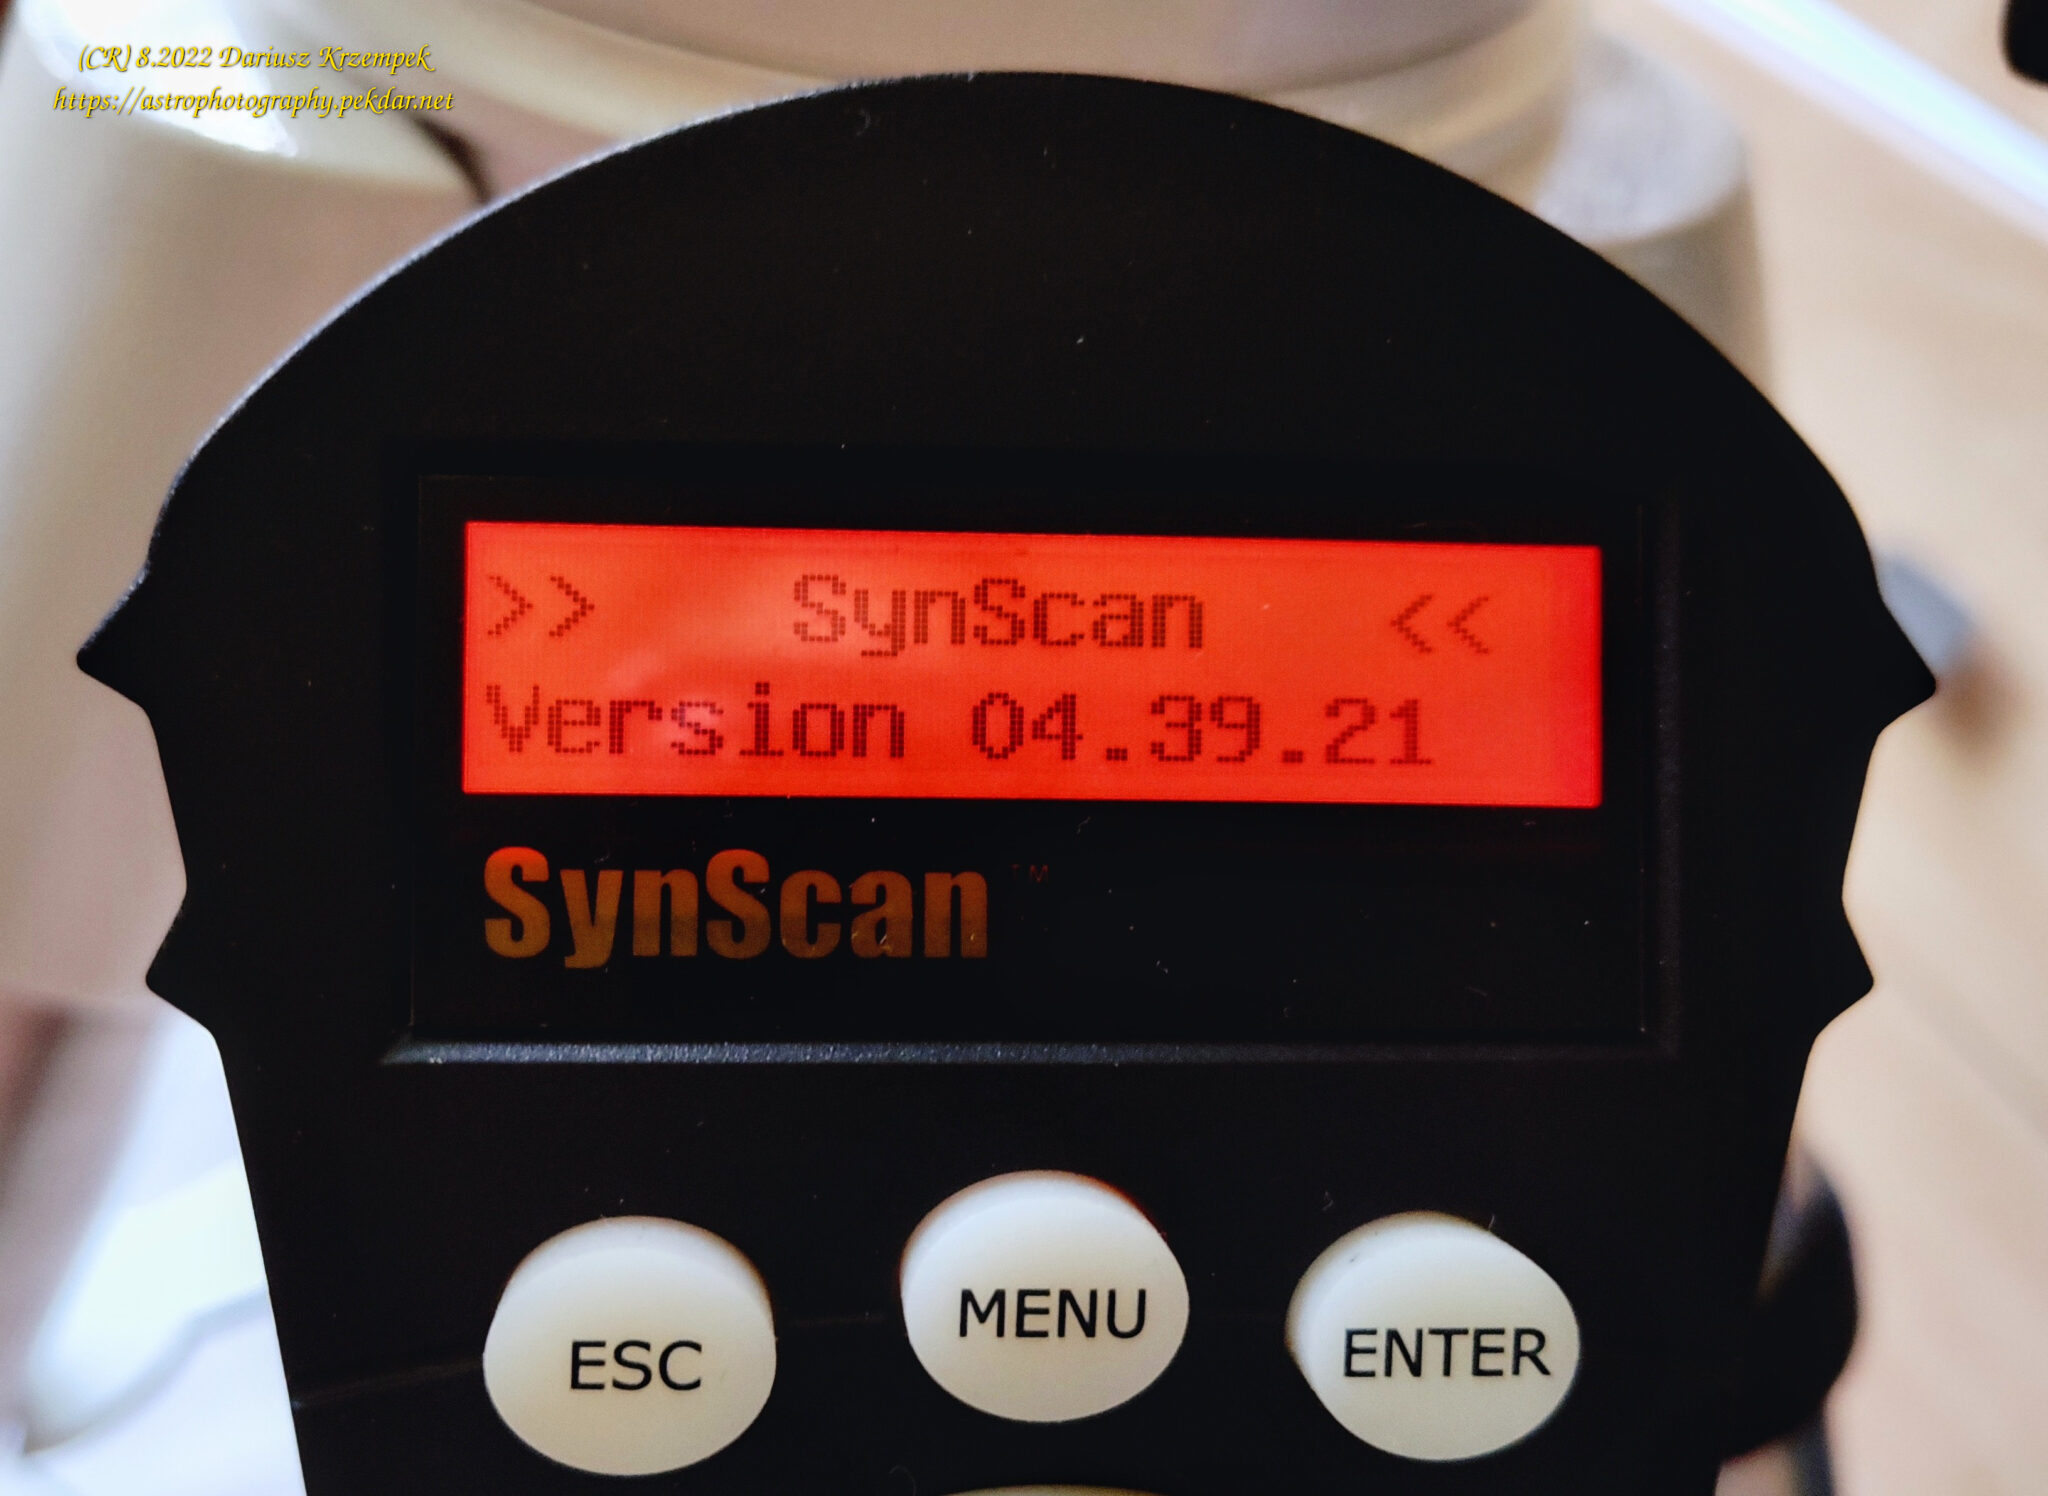 SynScan V4 - firmware version 04.39.21